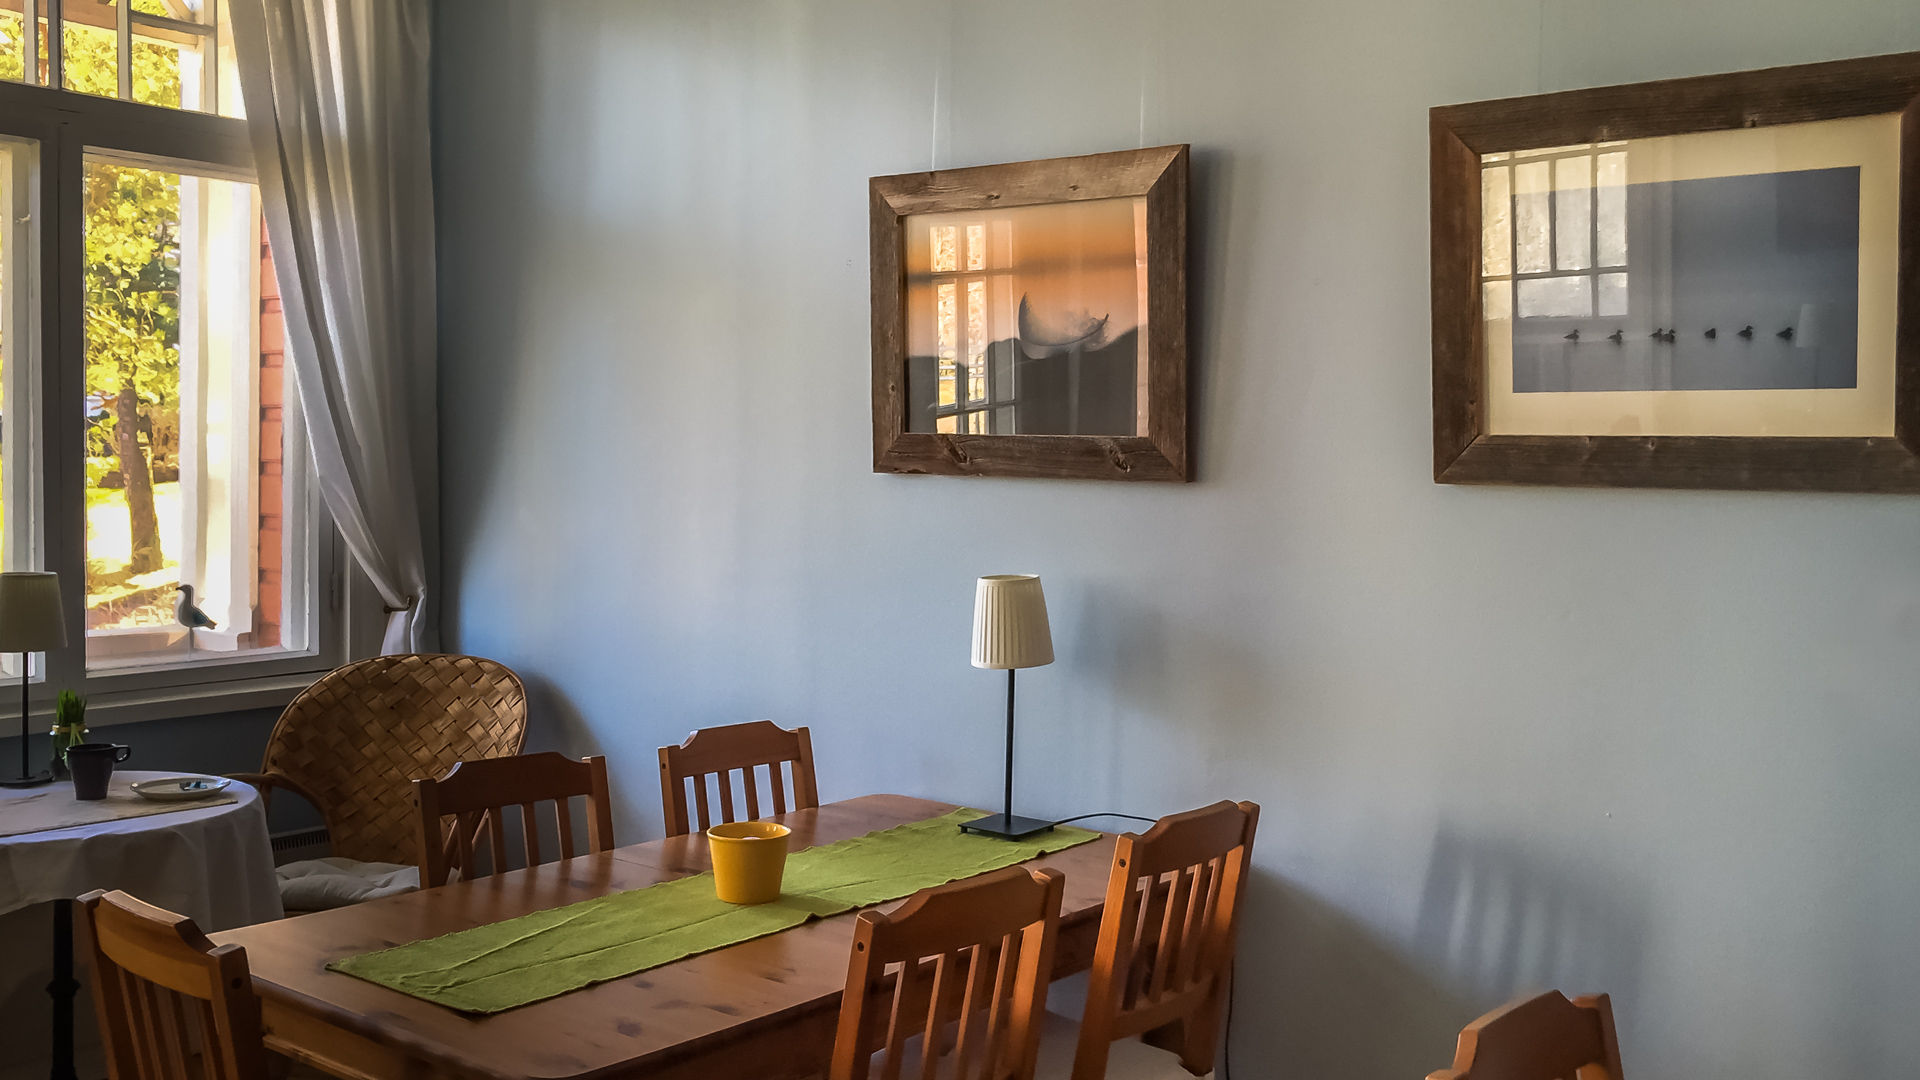 The Villa Maija Breakfast Room decorated by BioFoto Art.